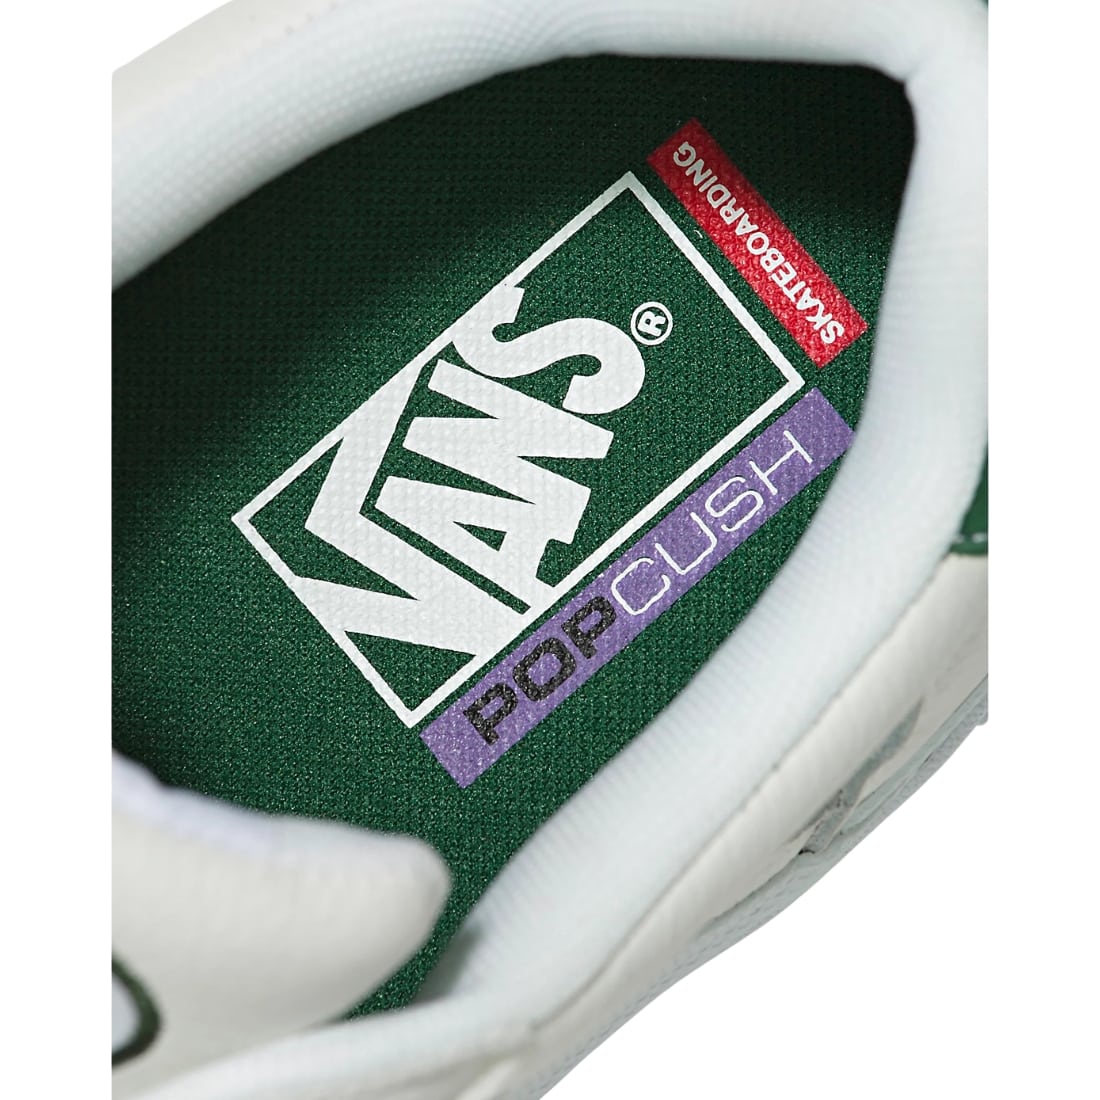 Vans Wayvee Skate Shoes - White/Green